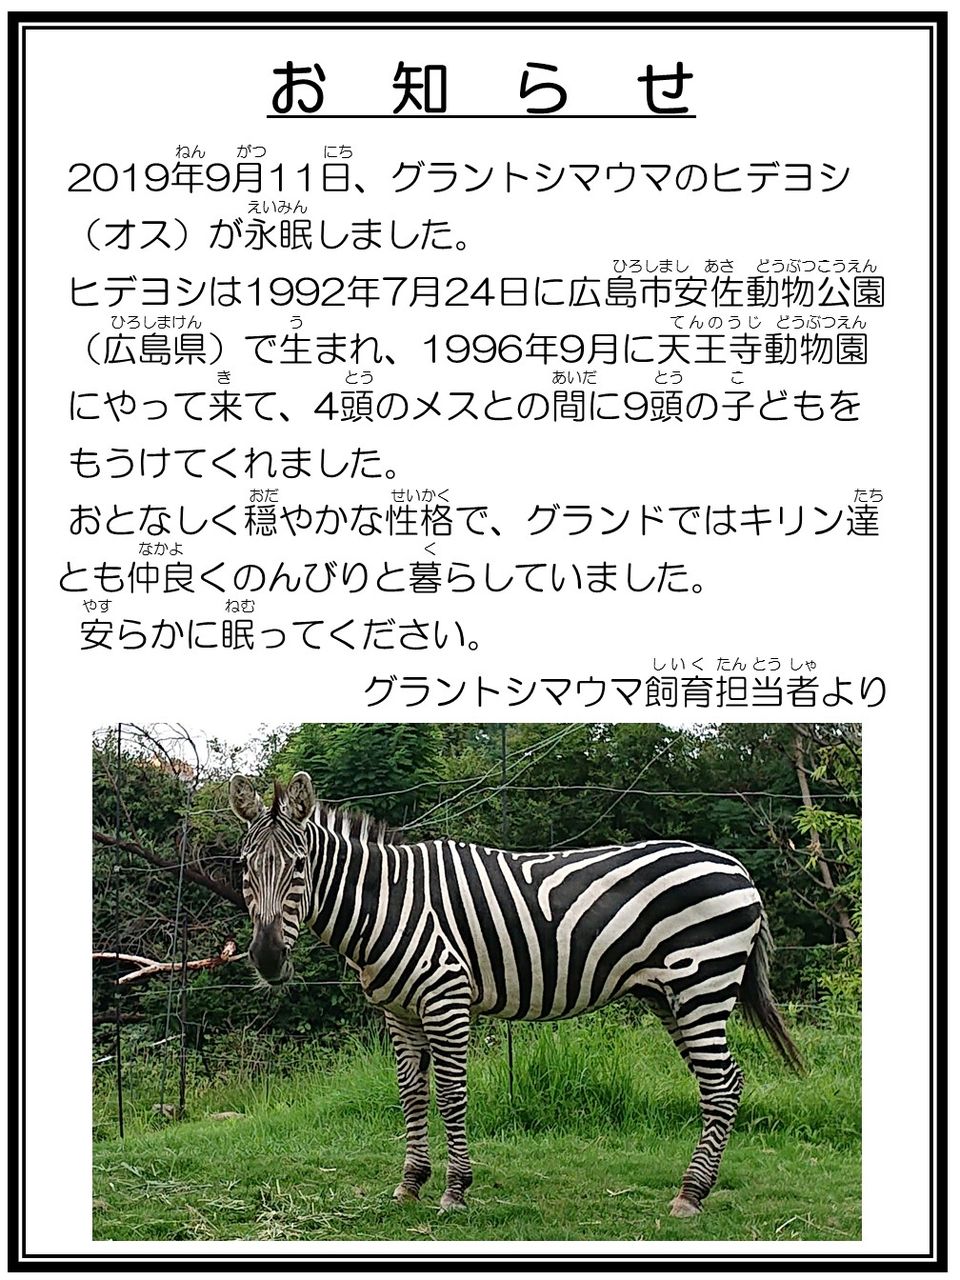 グラントシマウマのヒデヨシがなくなりました 天王寺動物園スタッフブログ